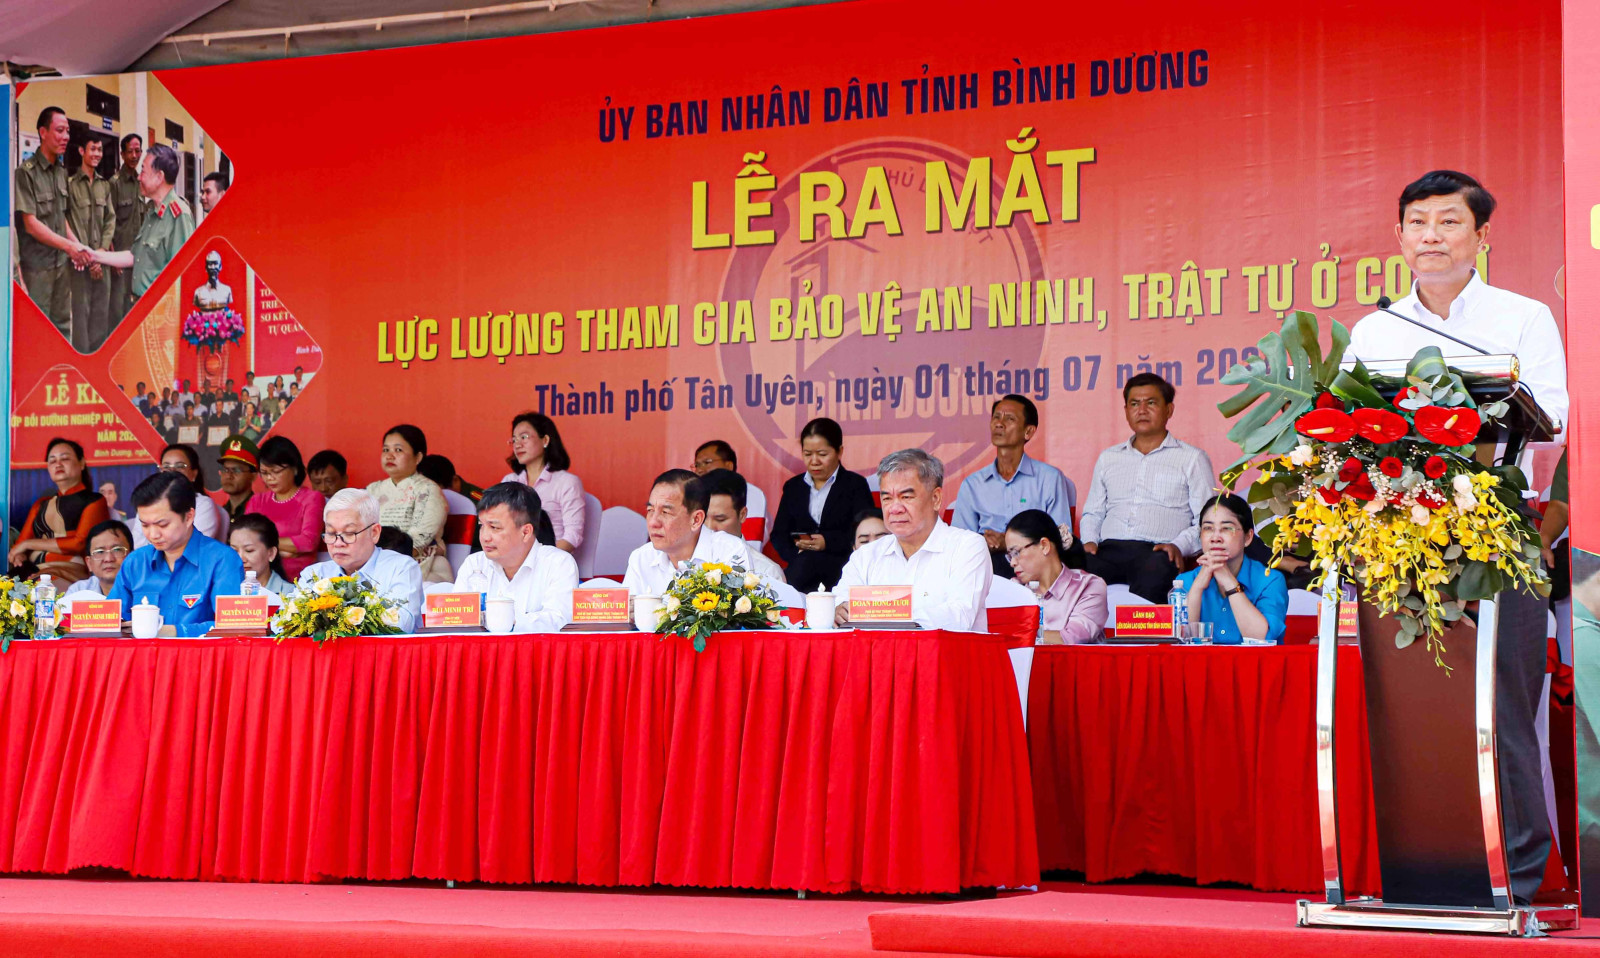 ng Võ Văn Minh, Phó Bí thư Tỉnh ủy, Chủ tịch UBND tỉnh